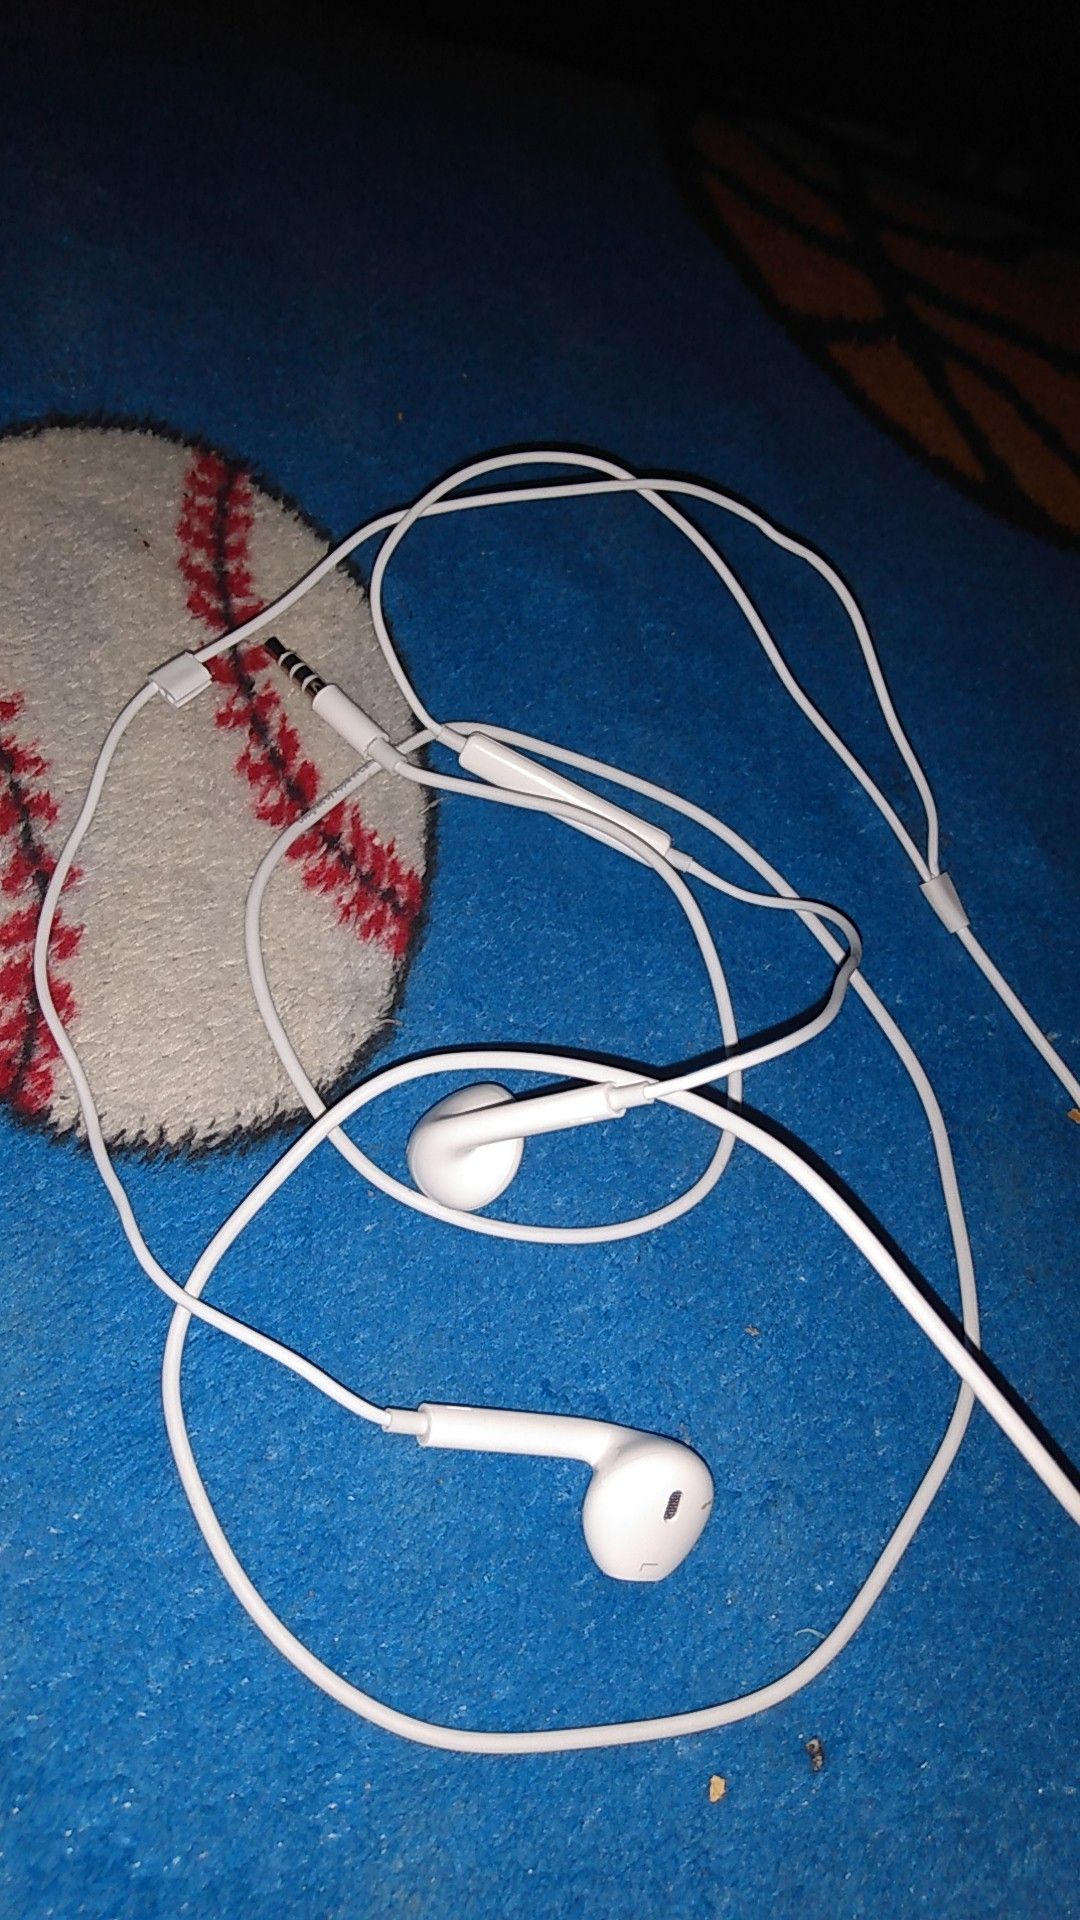 Original apple earphones earbuds